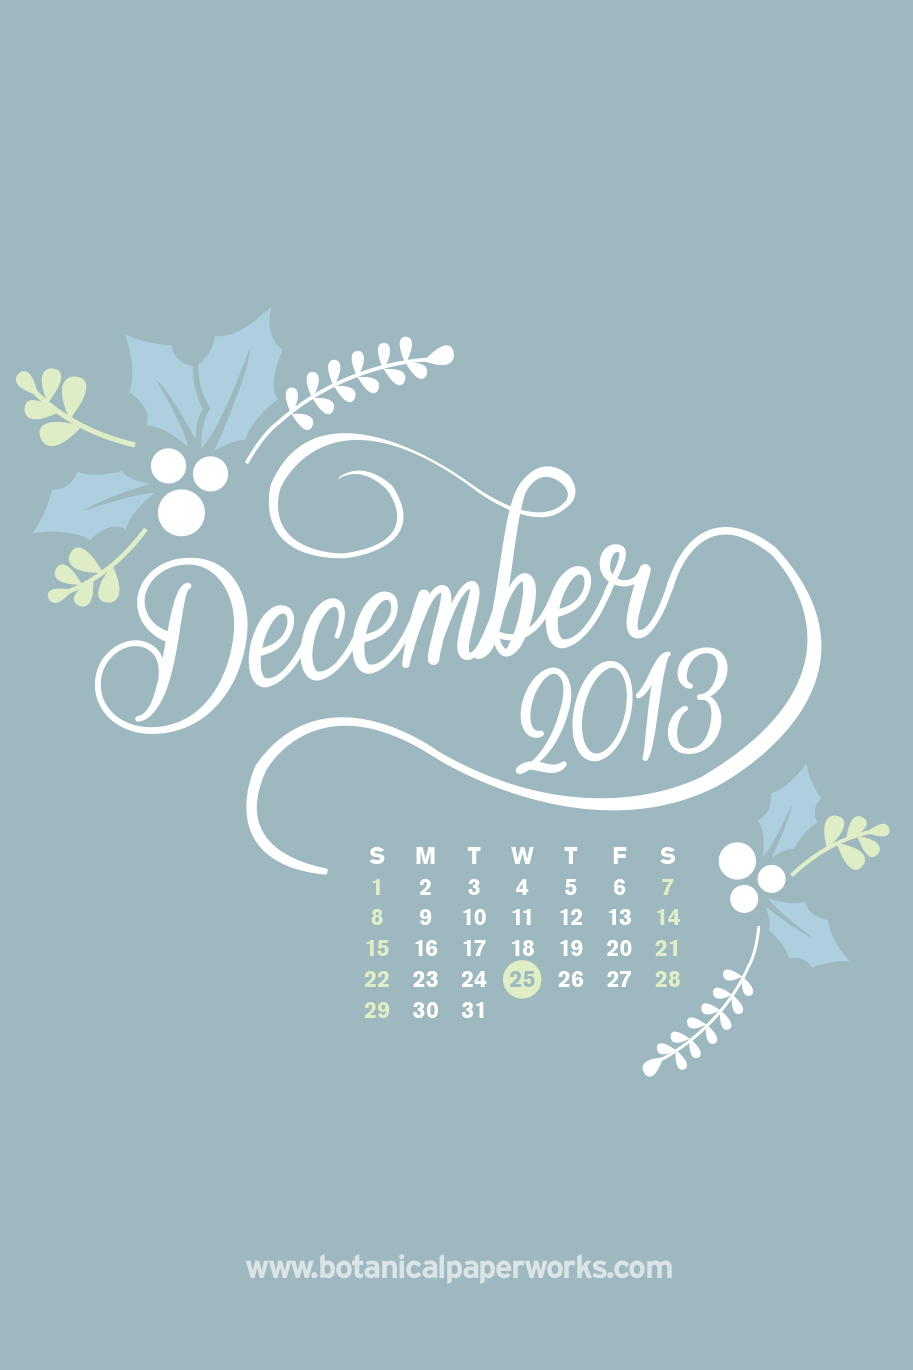 December Calendar Wallpapers